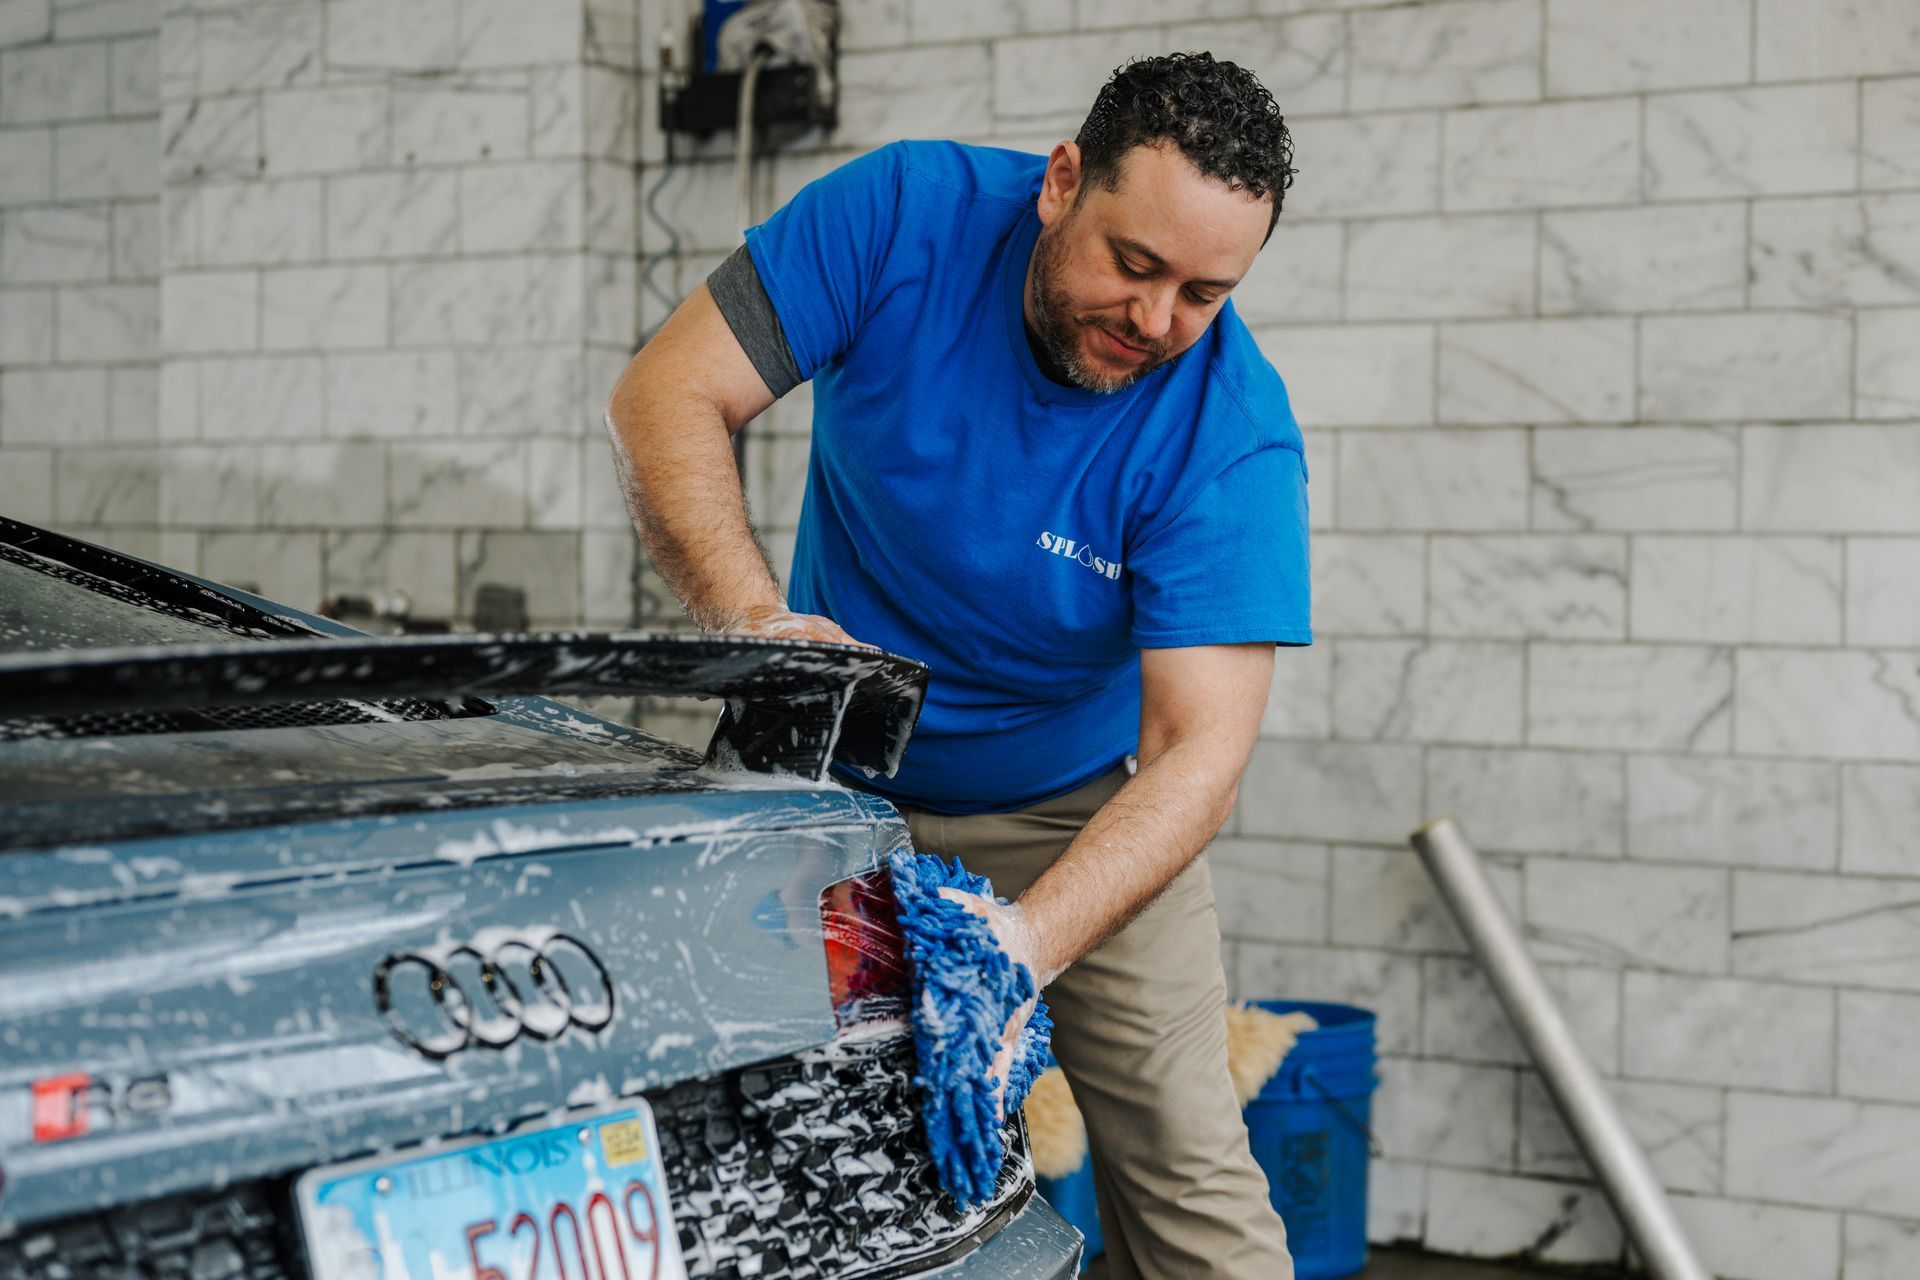 A man in a blue shirt is washing a car in a car wash.